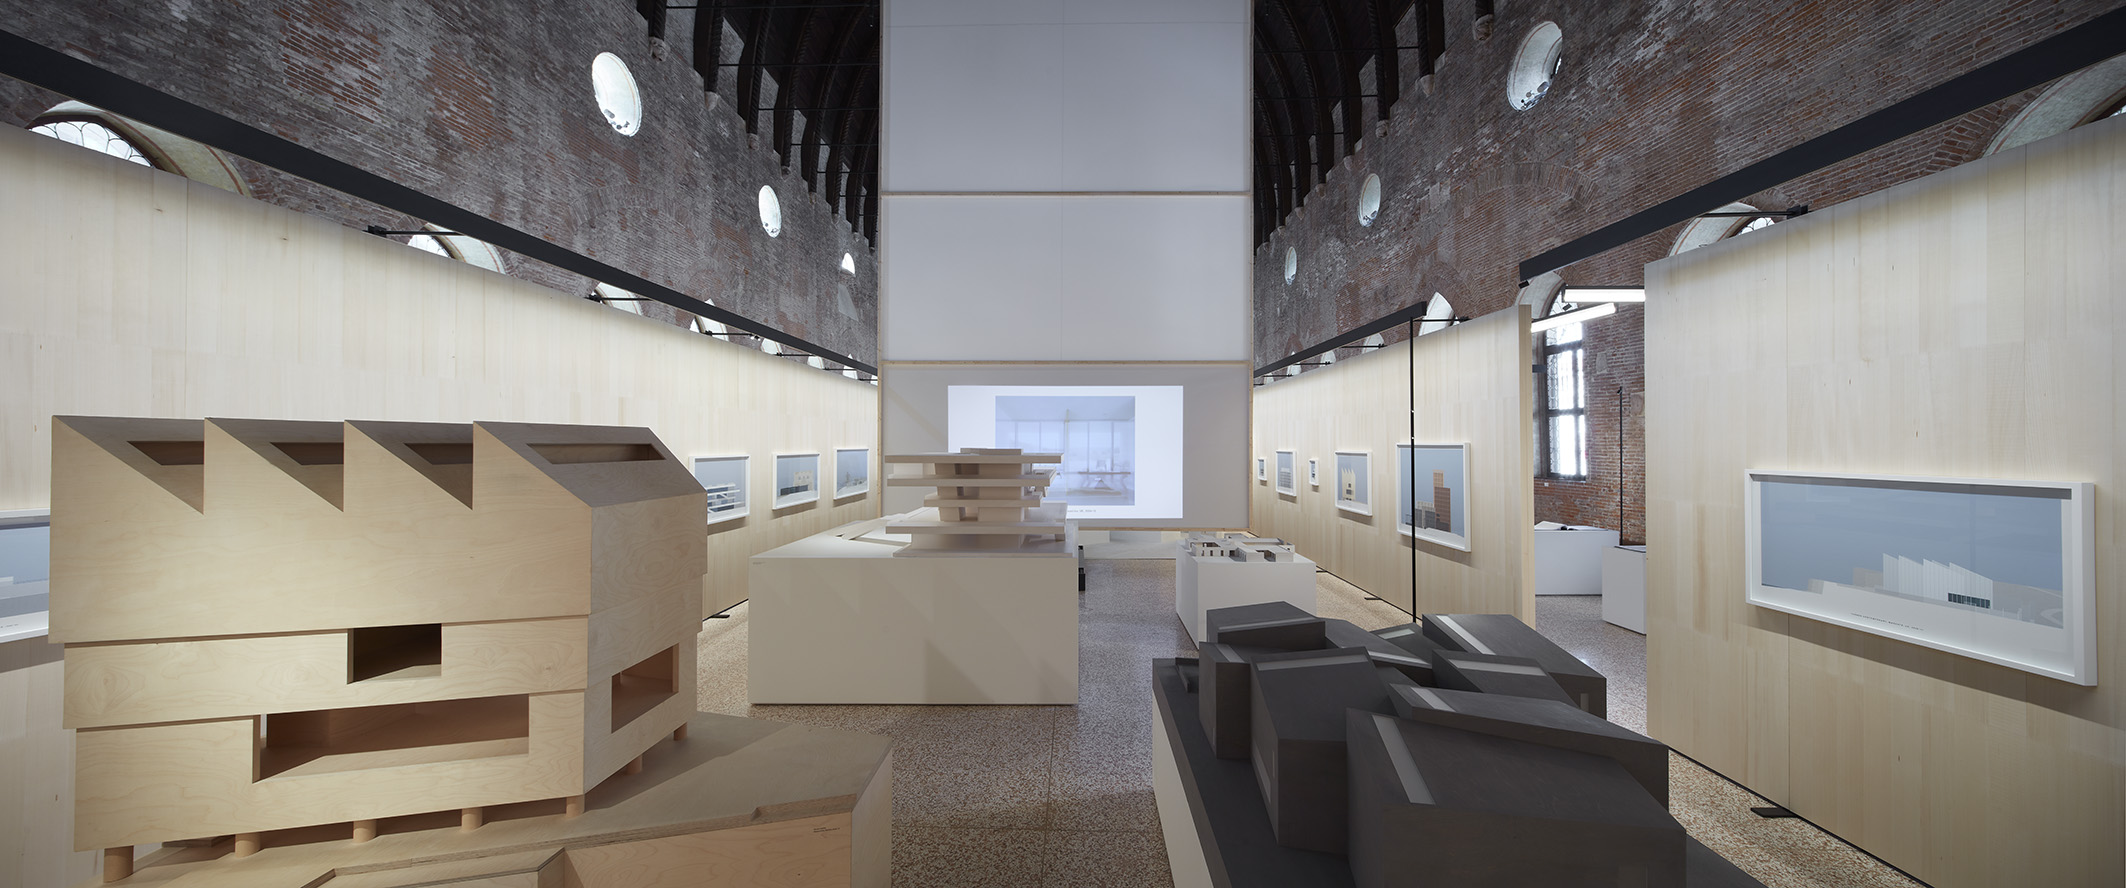 15 DCA Works 2018 4©Mario Carrieri Non solo Biennale di Venezia: 20 mostre di architettura da vedere adesso